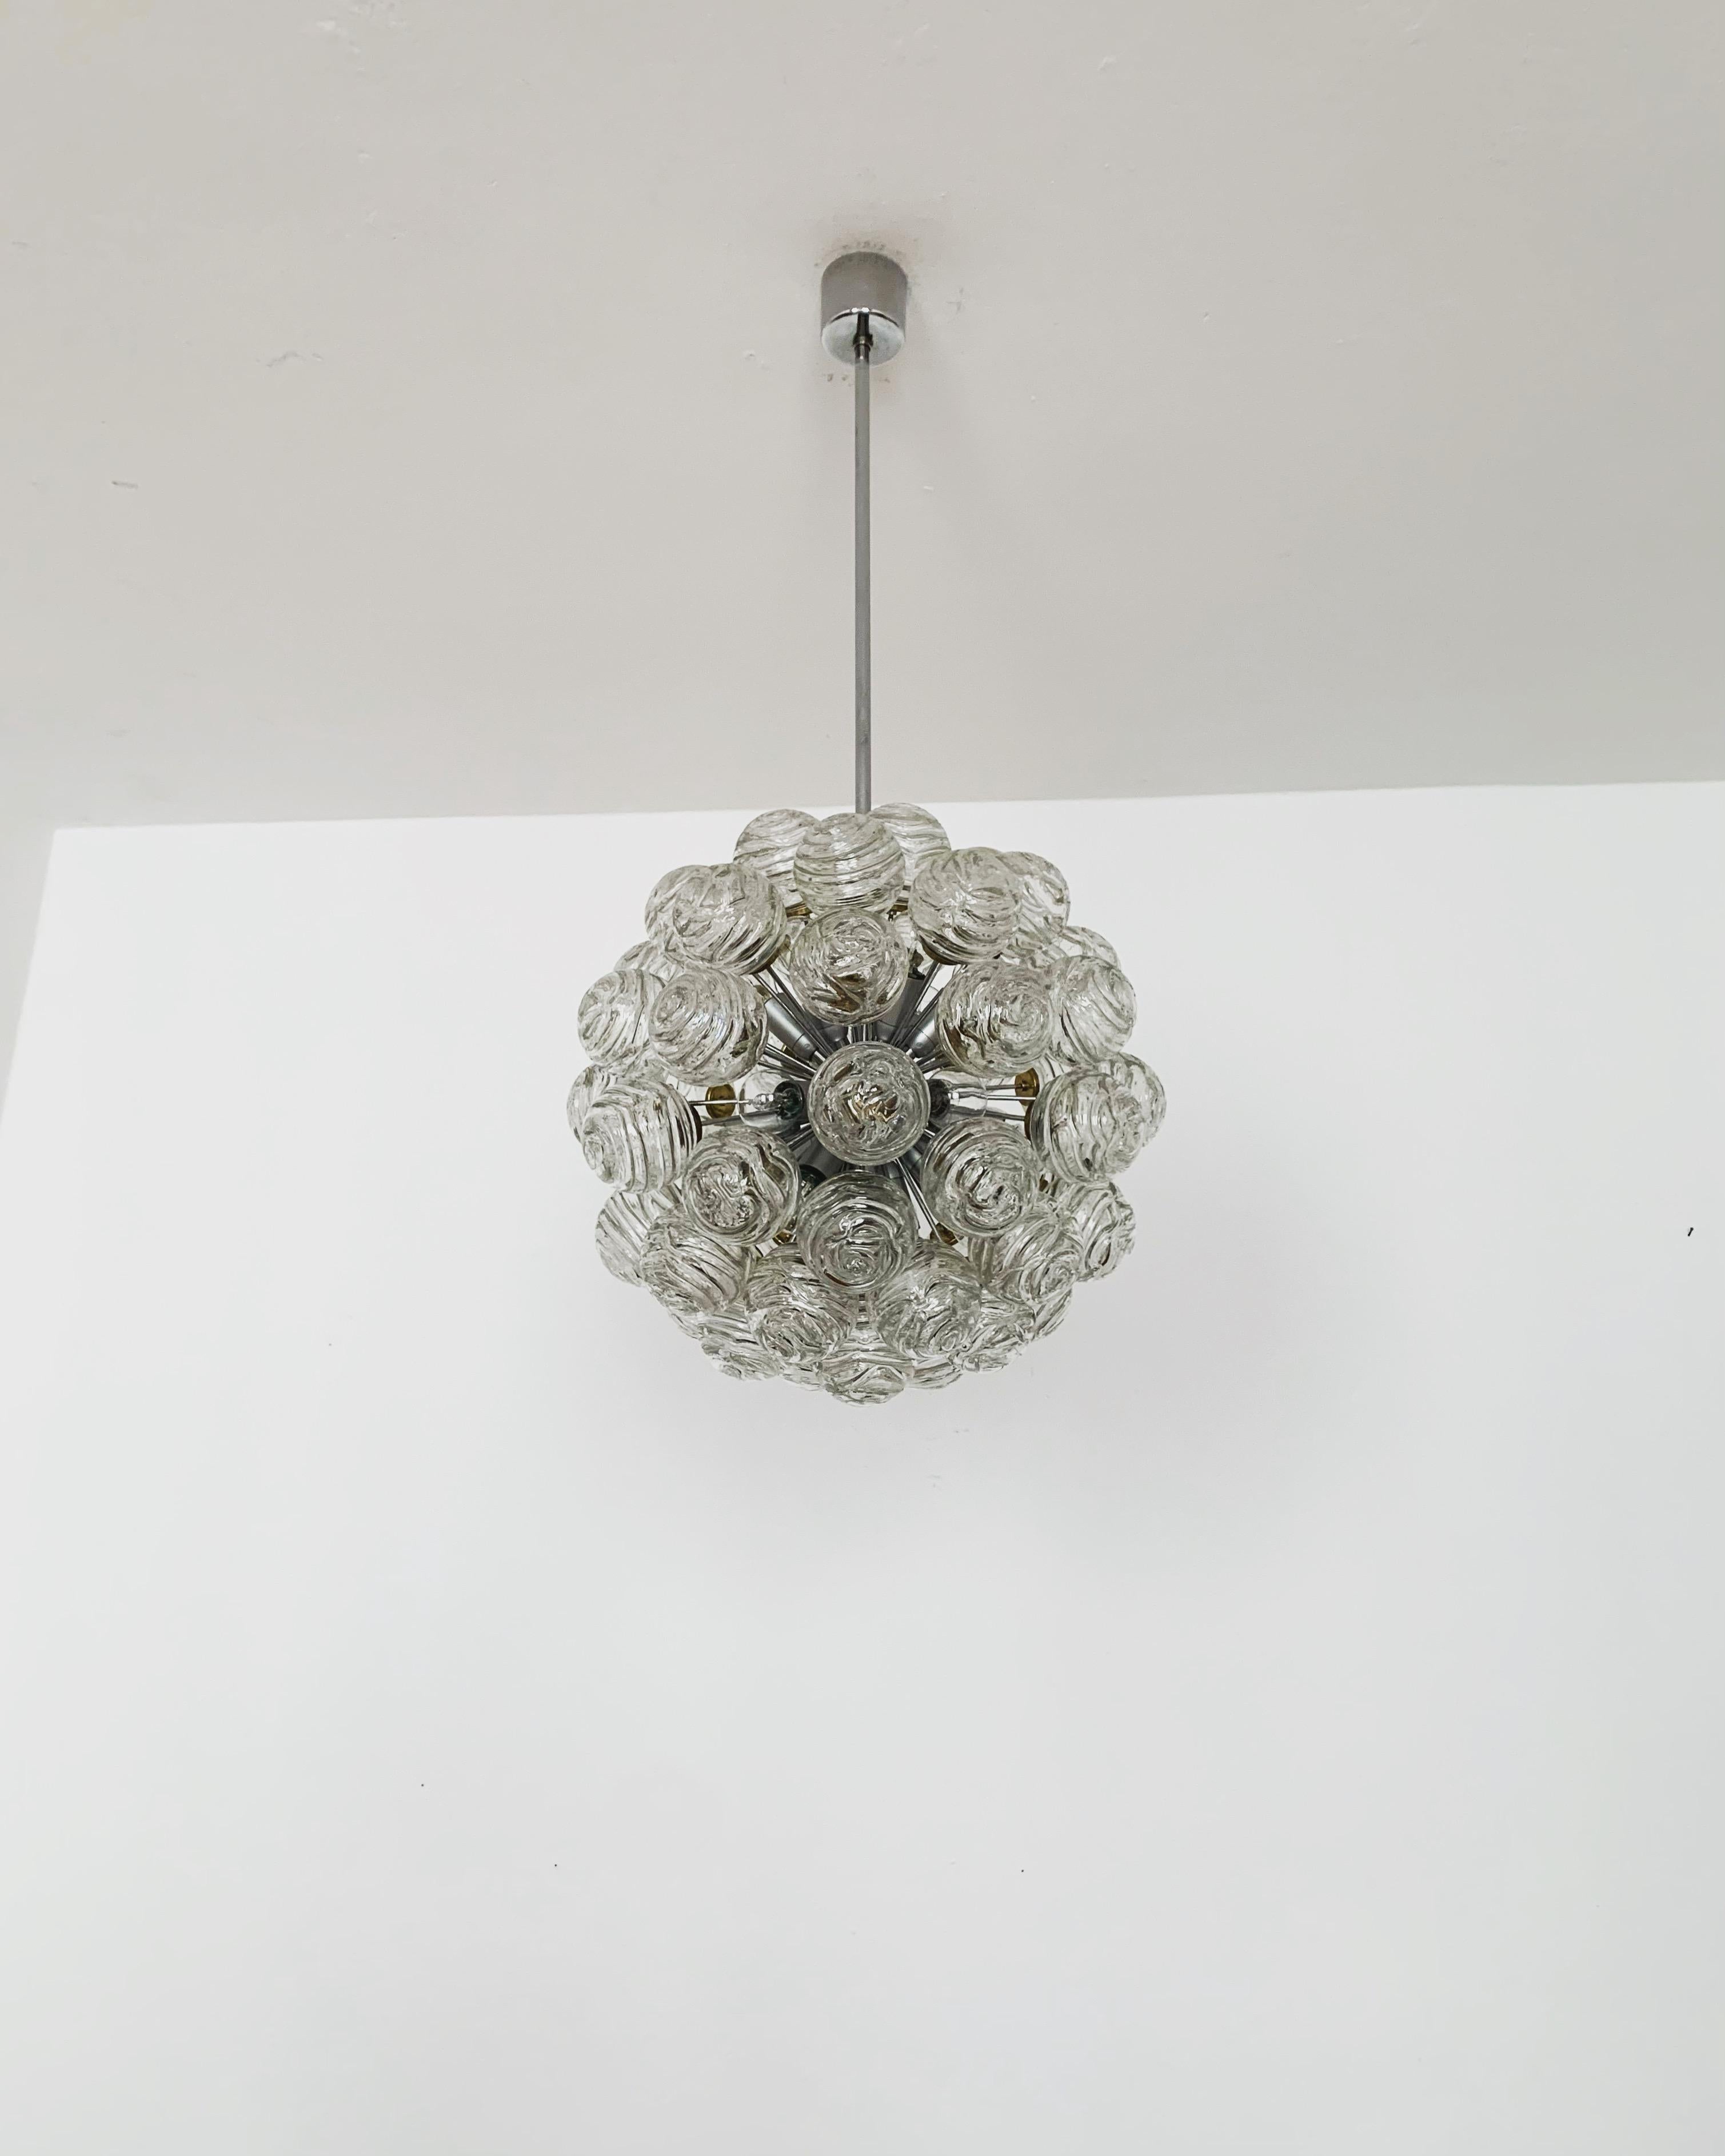 Fabelhafter Sputnik-Kronleuchter aus Blasenglas aus den 1960er Jahren.
Die Lampe mit den 55 Glaskugeln ist sehr edel.
Die Struktur in den Glasschirmen erzeugt ein spektakuläres Lichtspiel.
Ein absoluter Blickfang.

Hersteller: